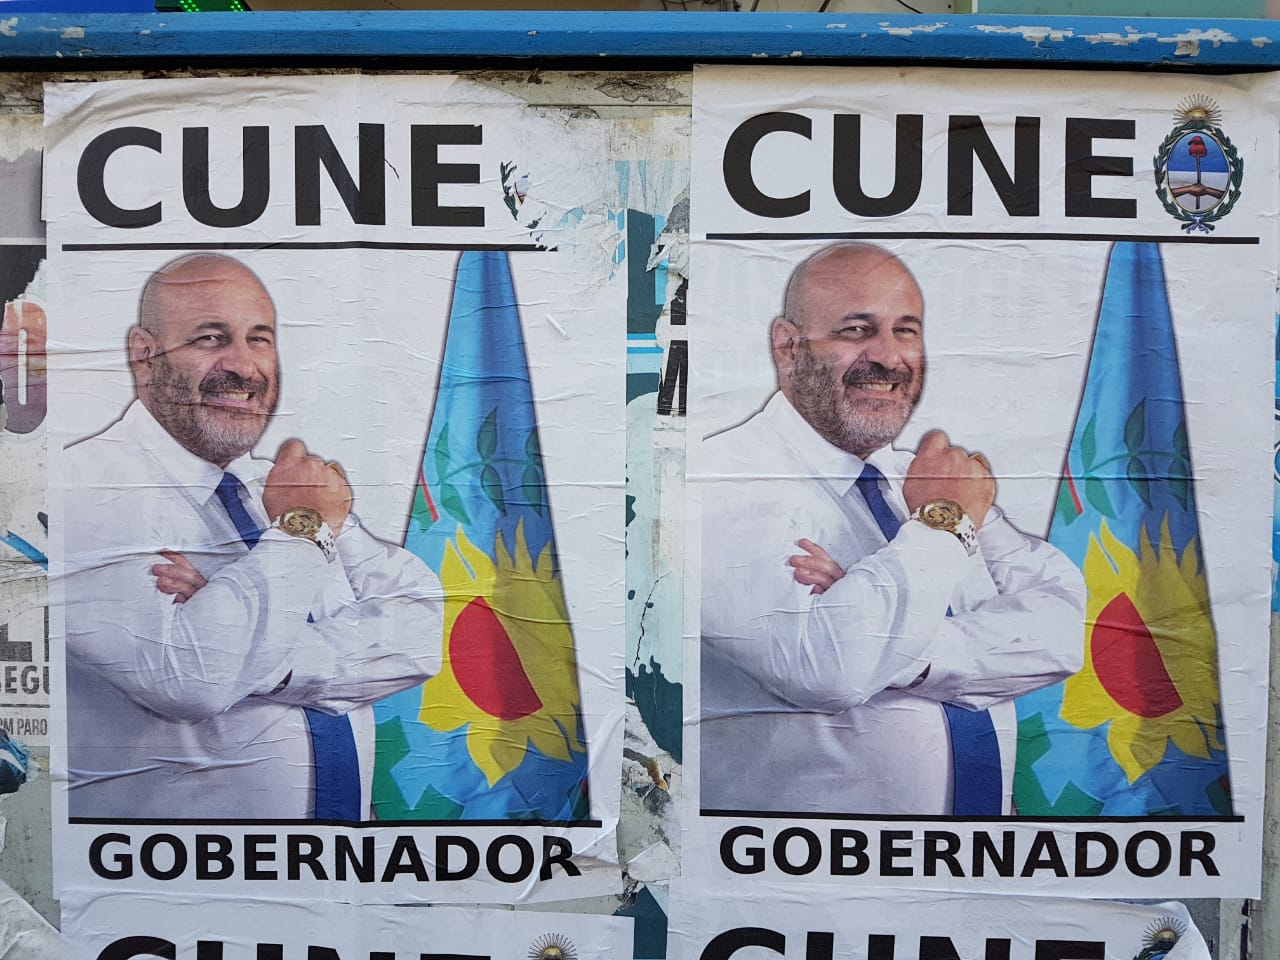 Aparecieron los afiches de Santiago Cúneo como candidato a Gobernador de la Provincia